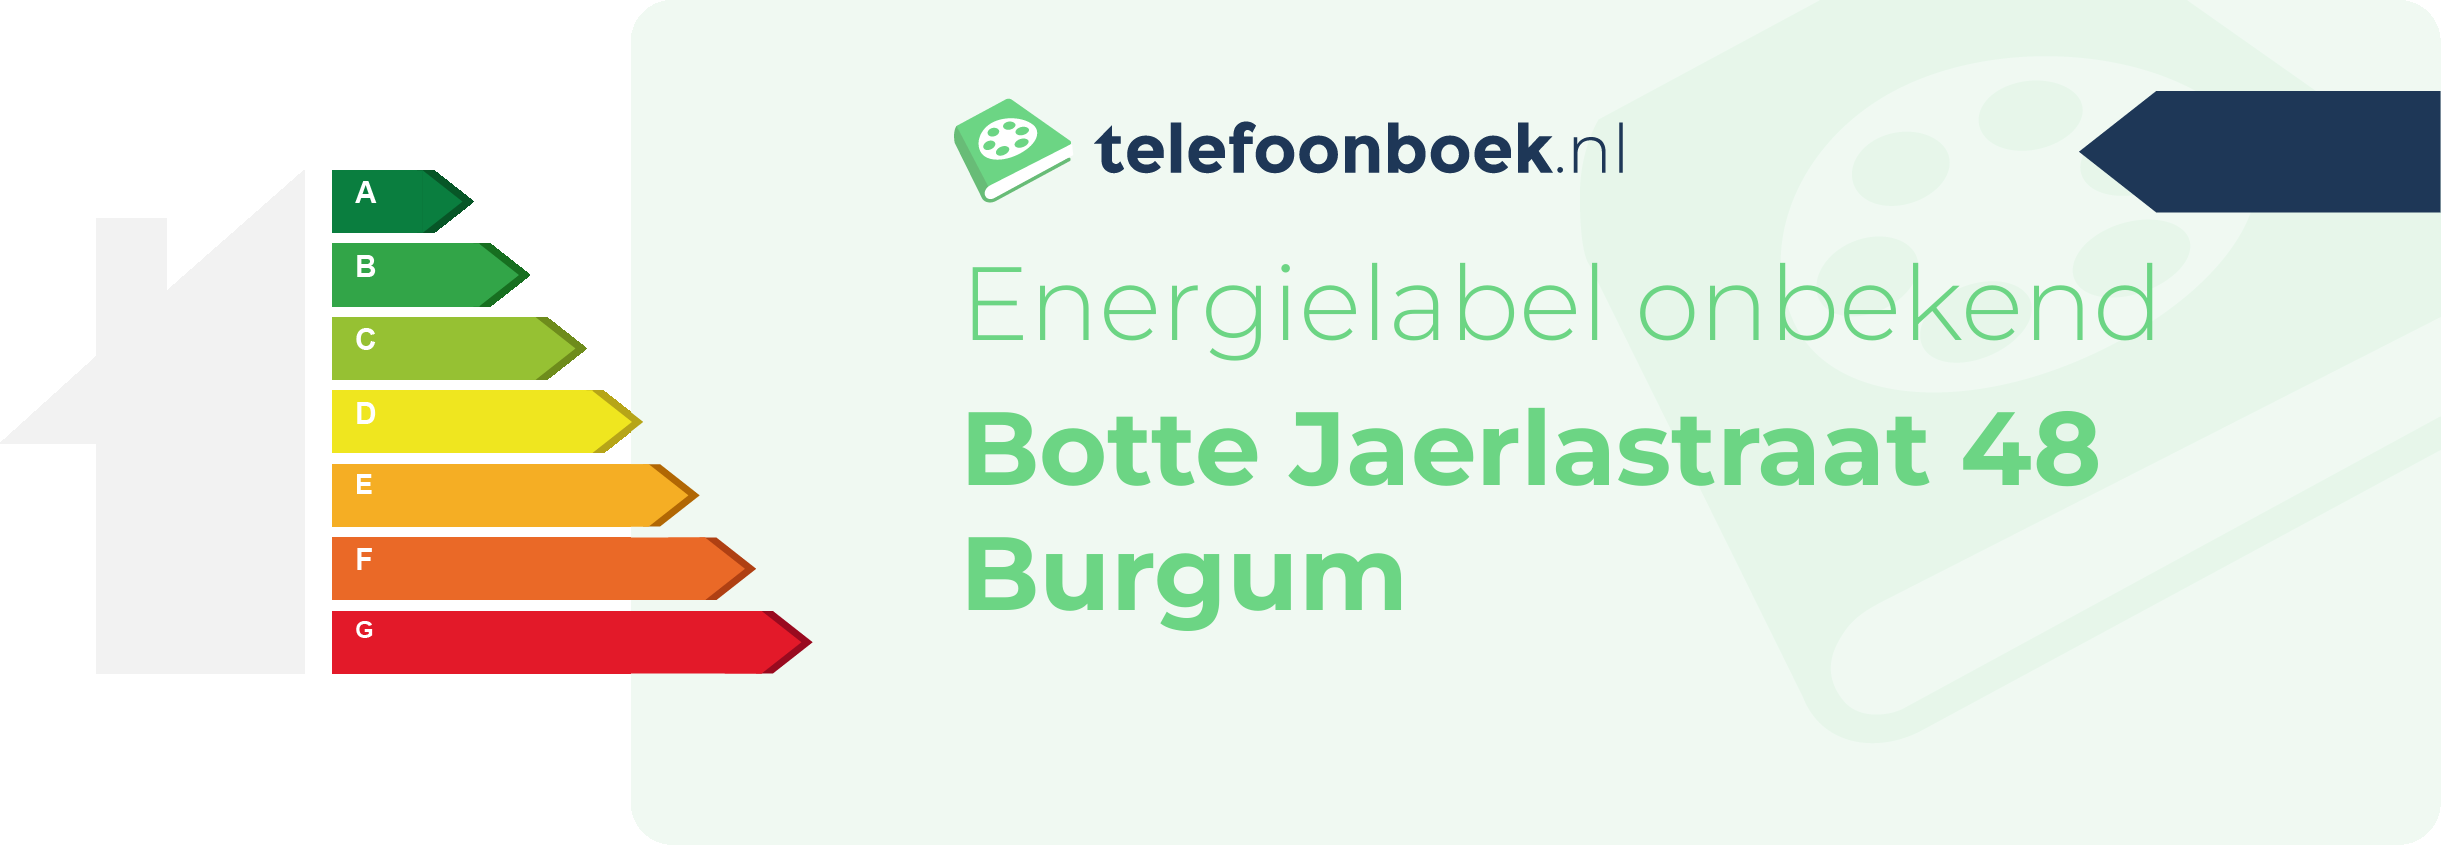 Energielabel Botte Jaerlastraat 48 Burgum